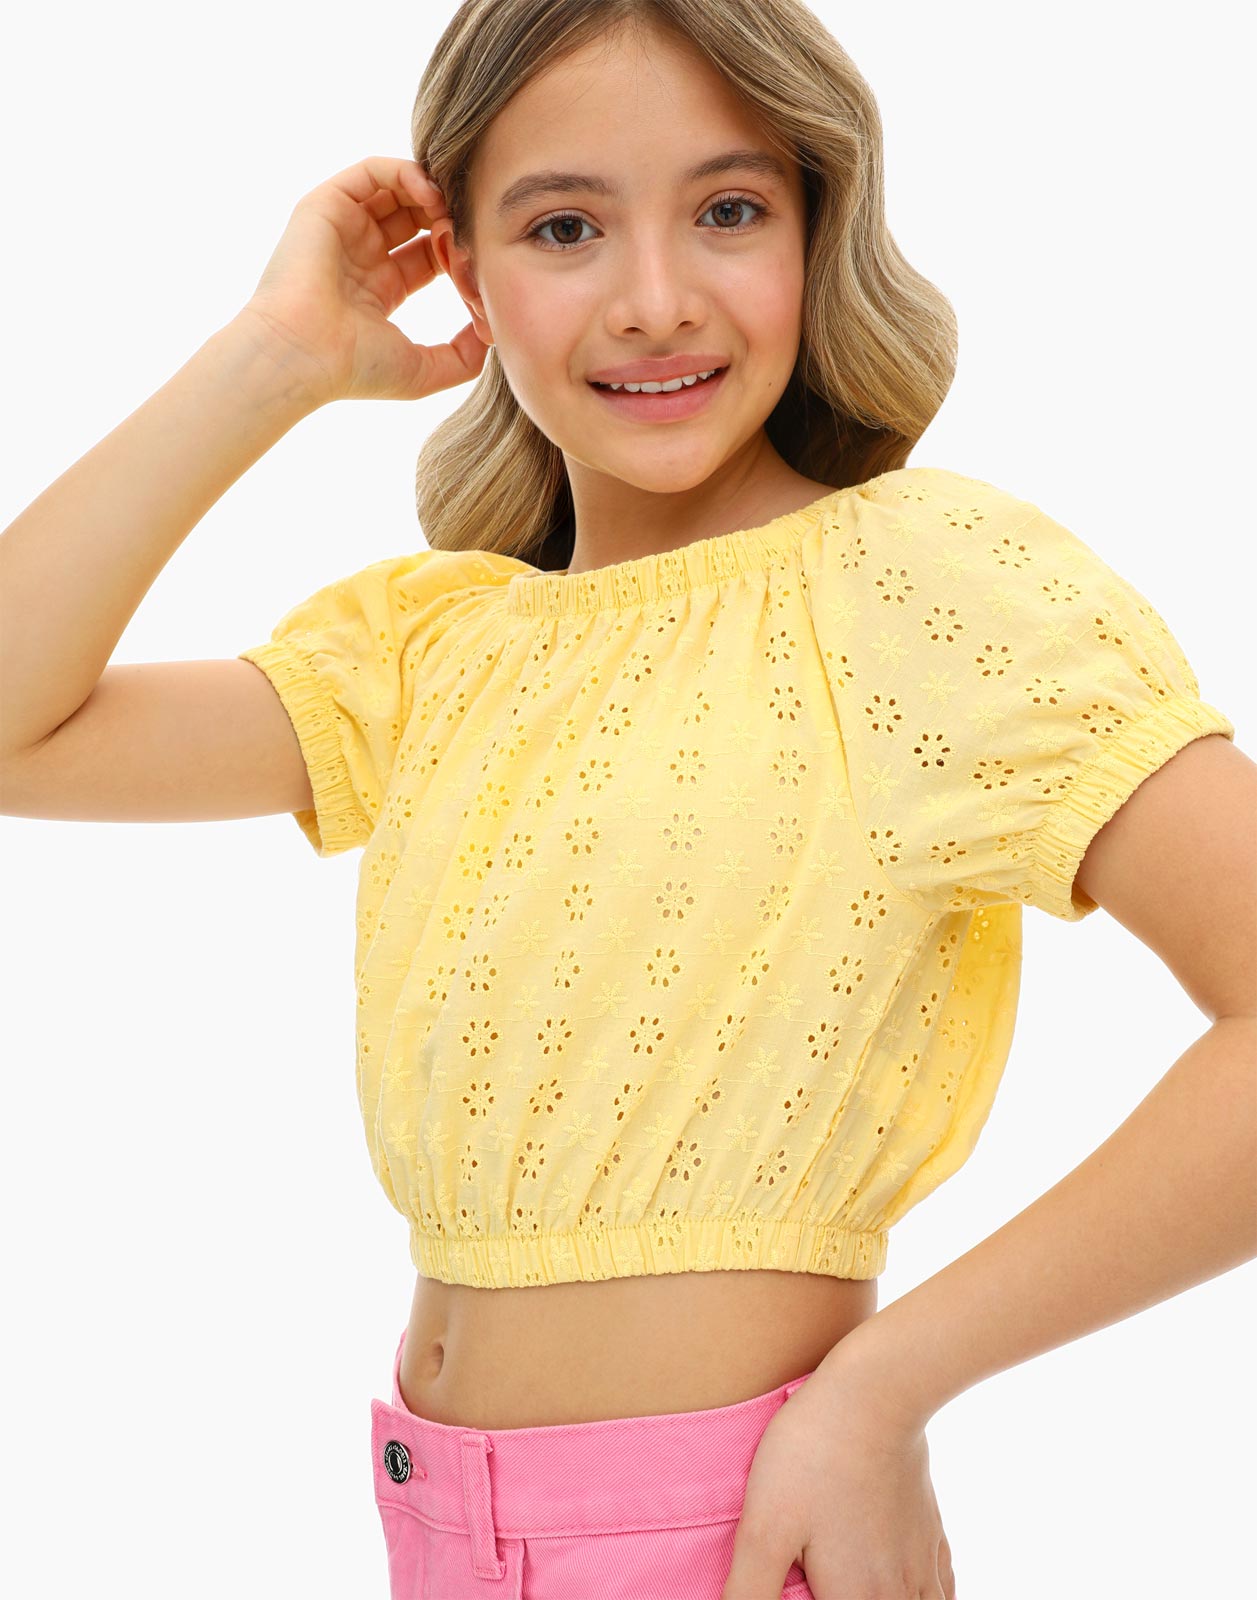 Светло-жёлтая блузка с вышивкой ришелье для девочки 6-8л/122-128